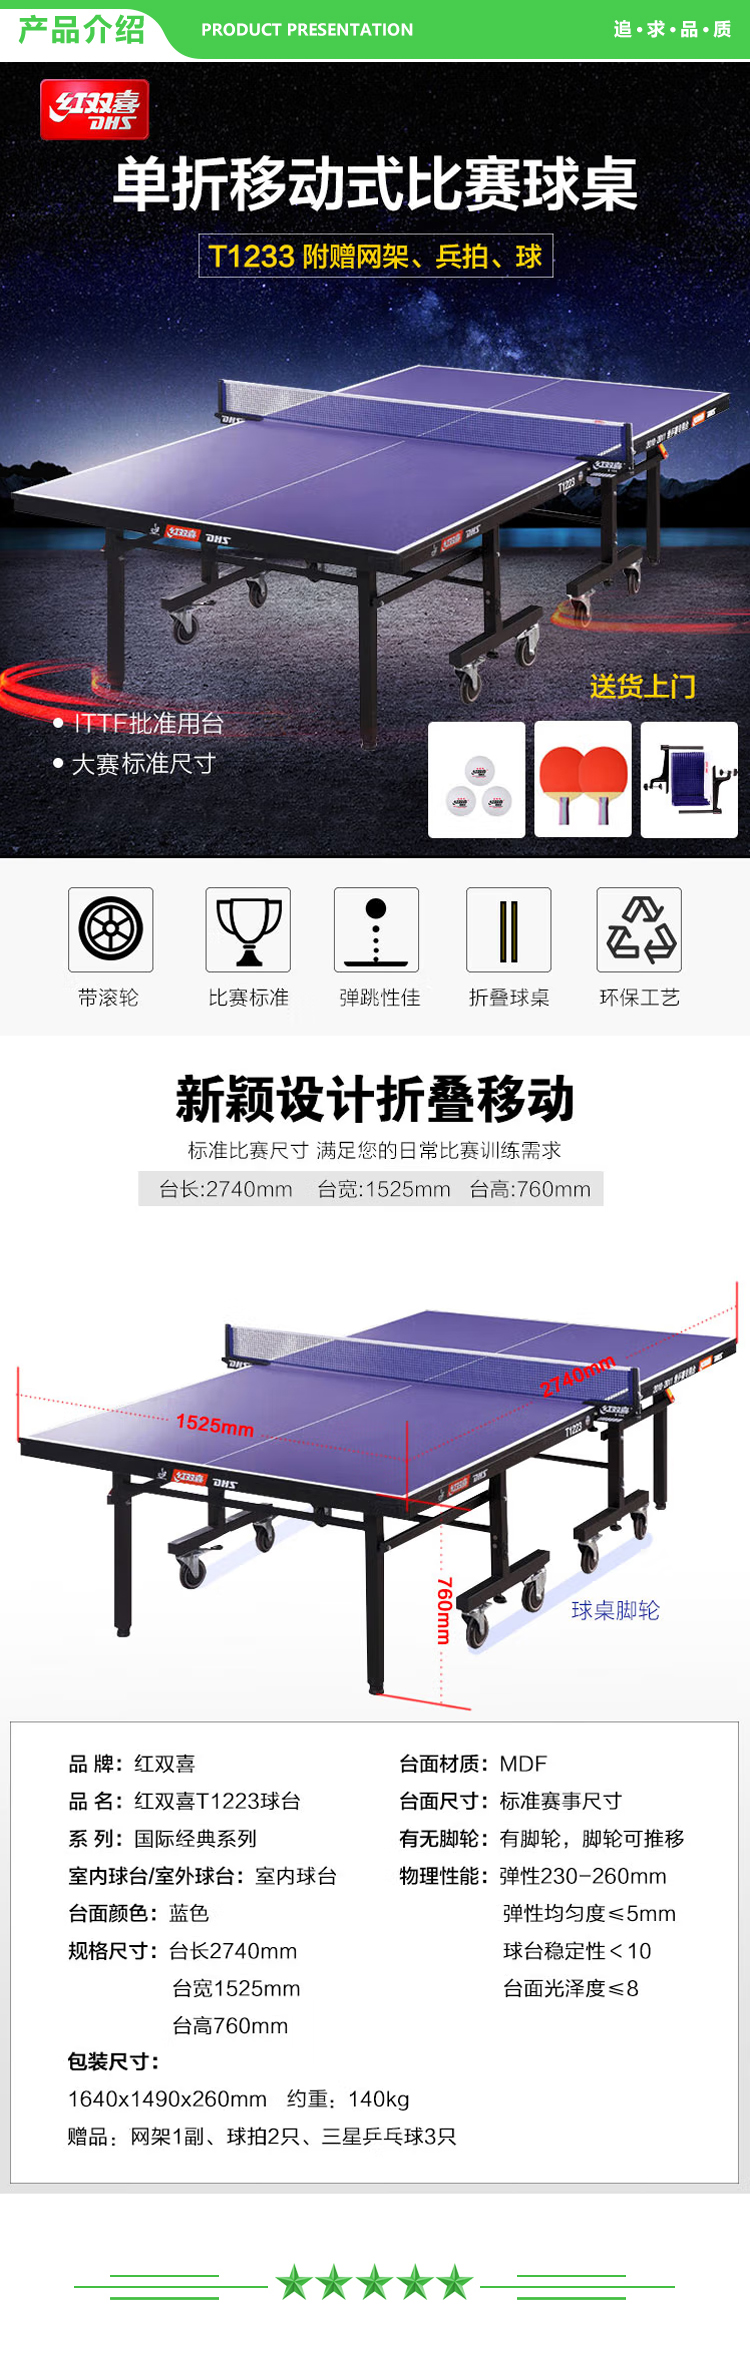 红双喜 DHS T1223 乒乓球台折叠移动式专业比赛乒乓球桌(含高档网架、乒乓拍、乒乓球) .jpg